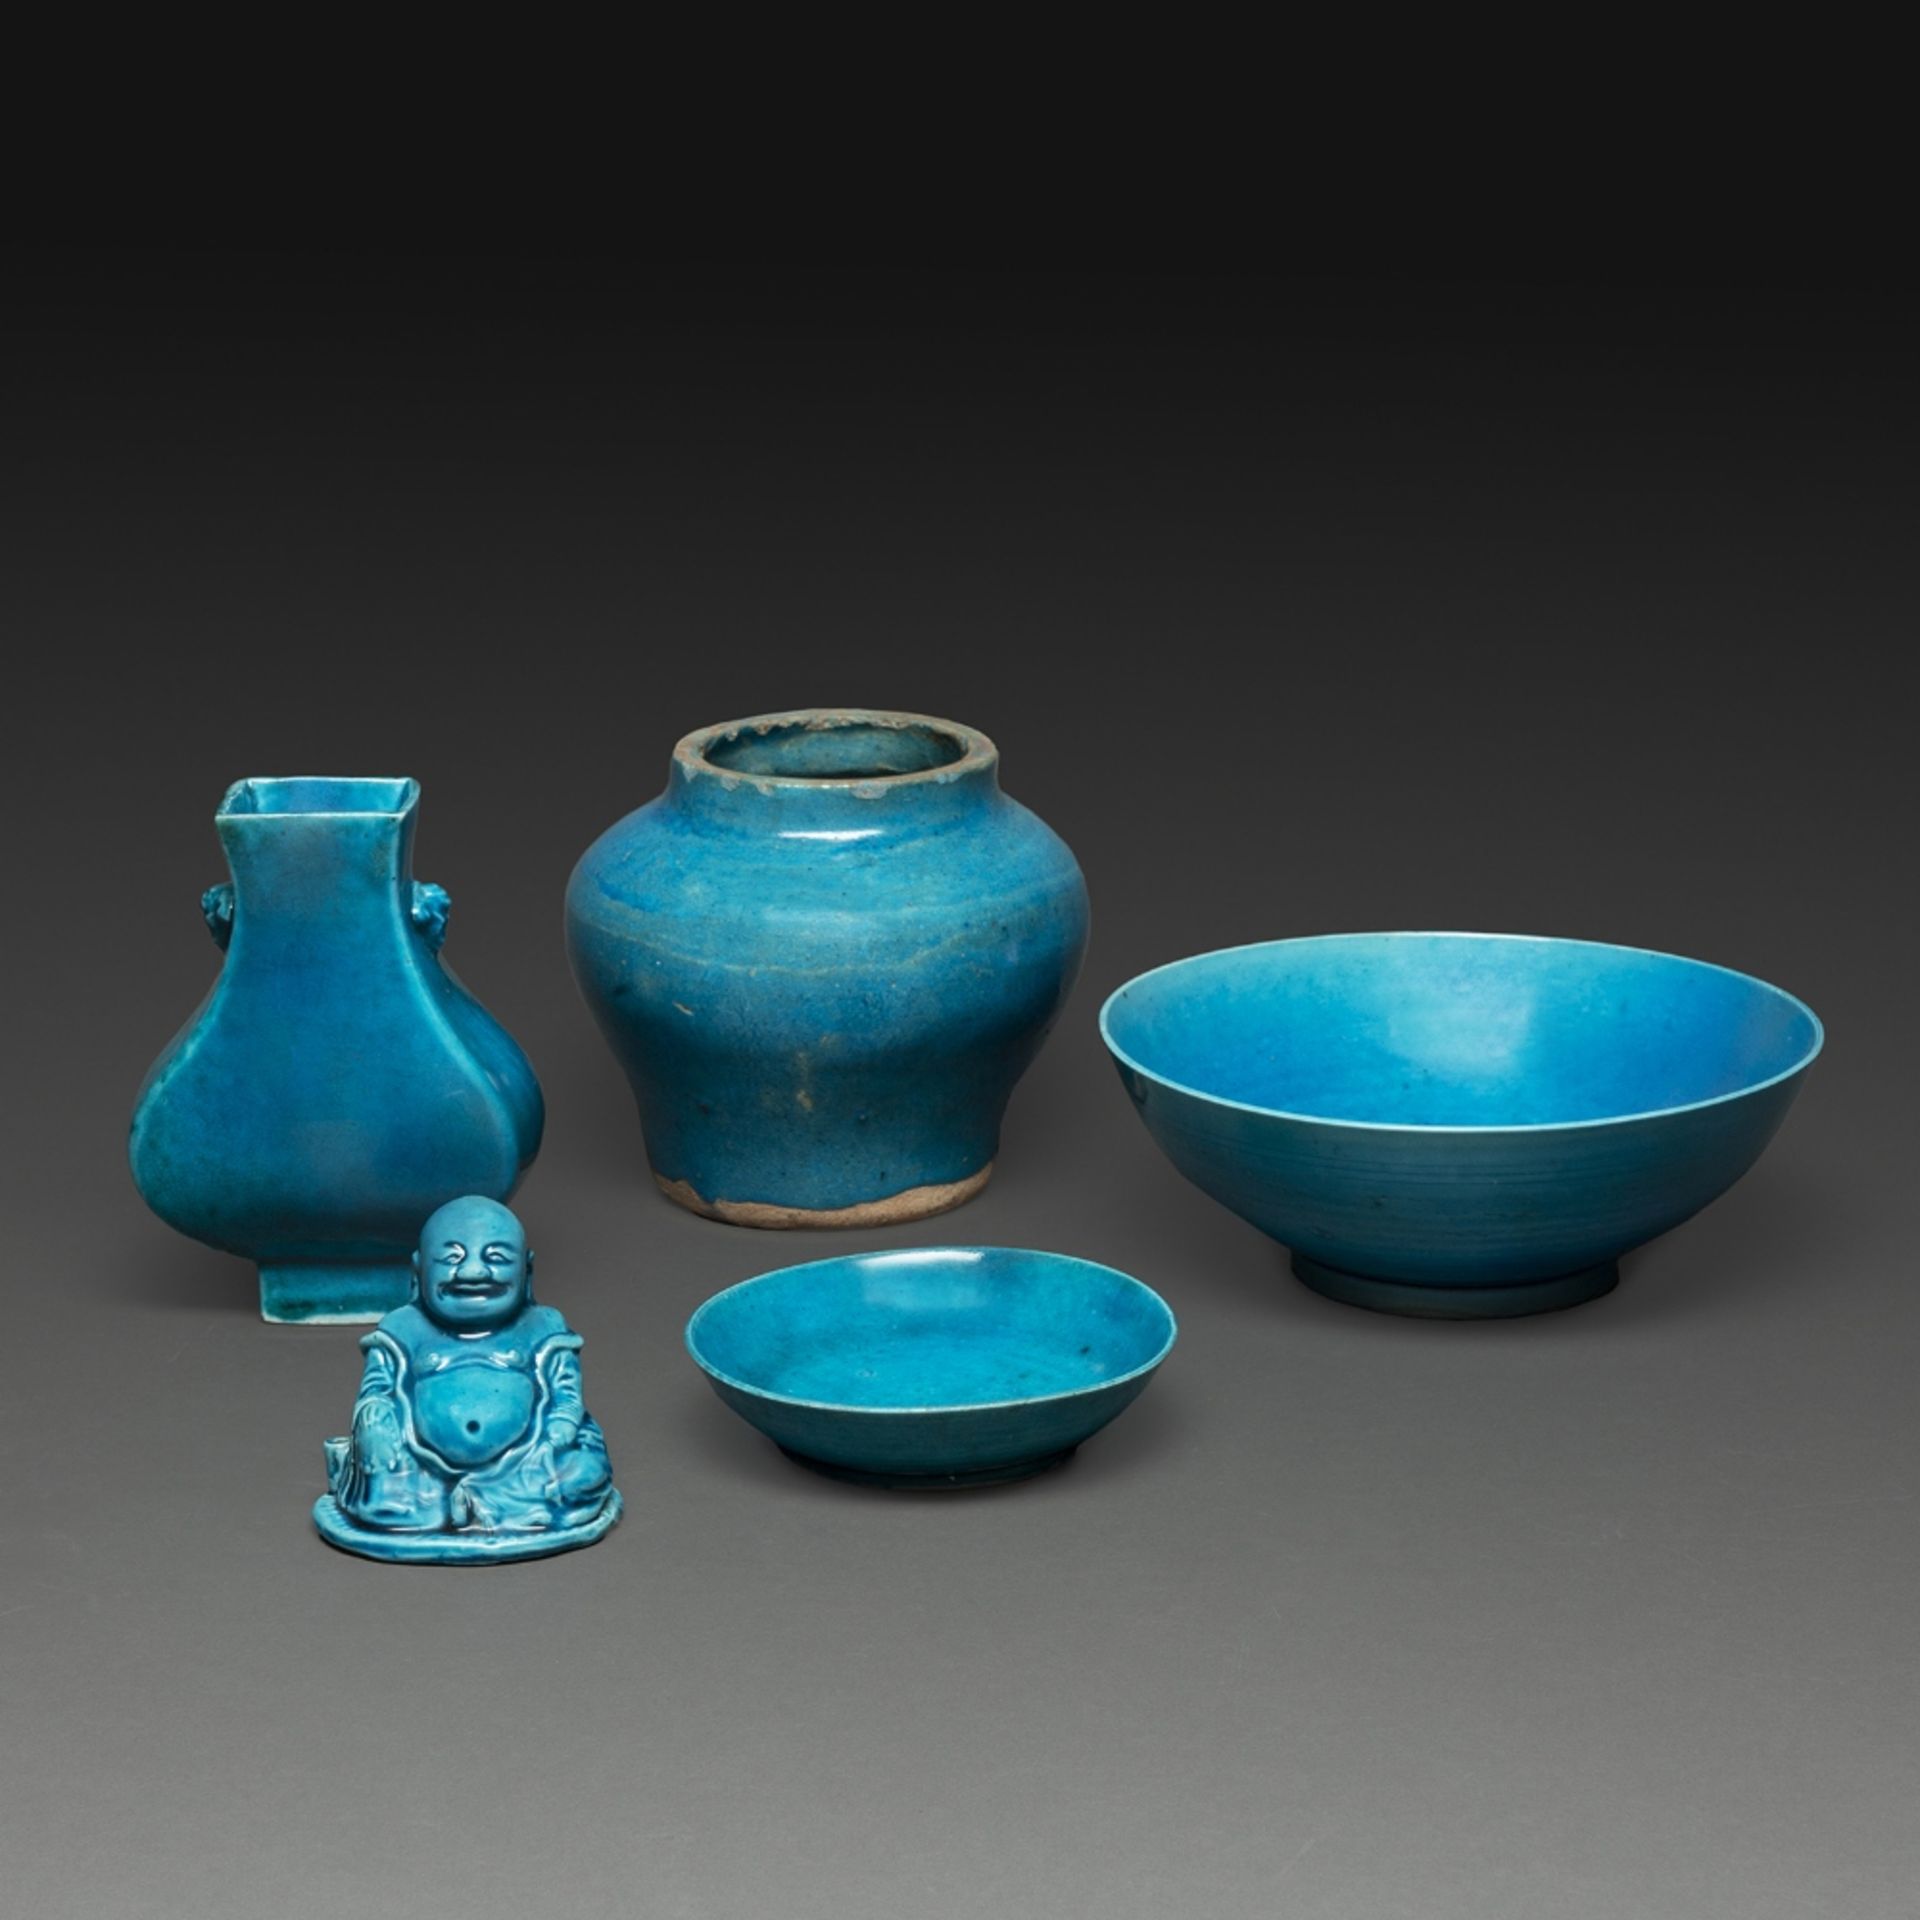 SUITE DE CINQ PIÈCES en porcelaine et grès émaillé bleu turquoise, comprenant une jarre, un